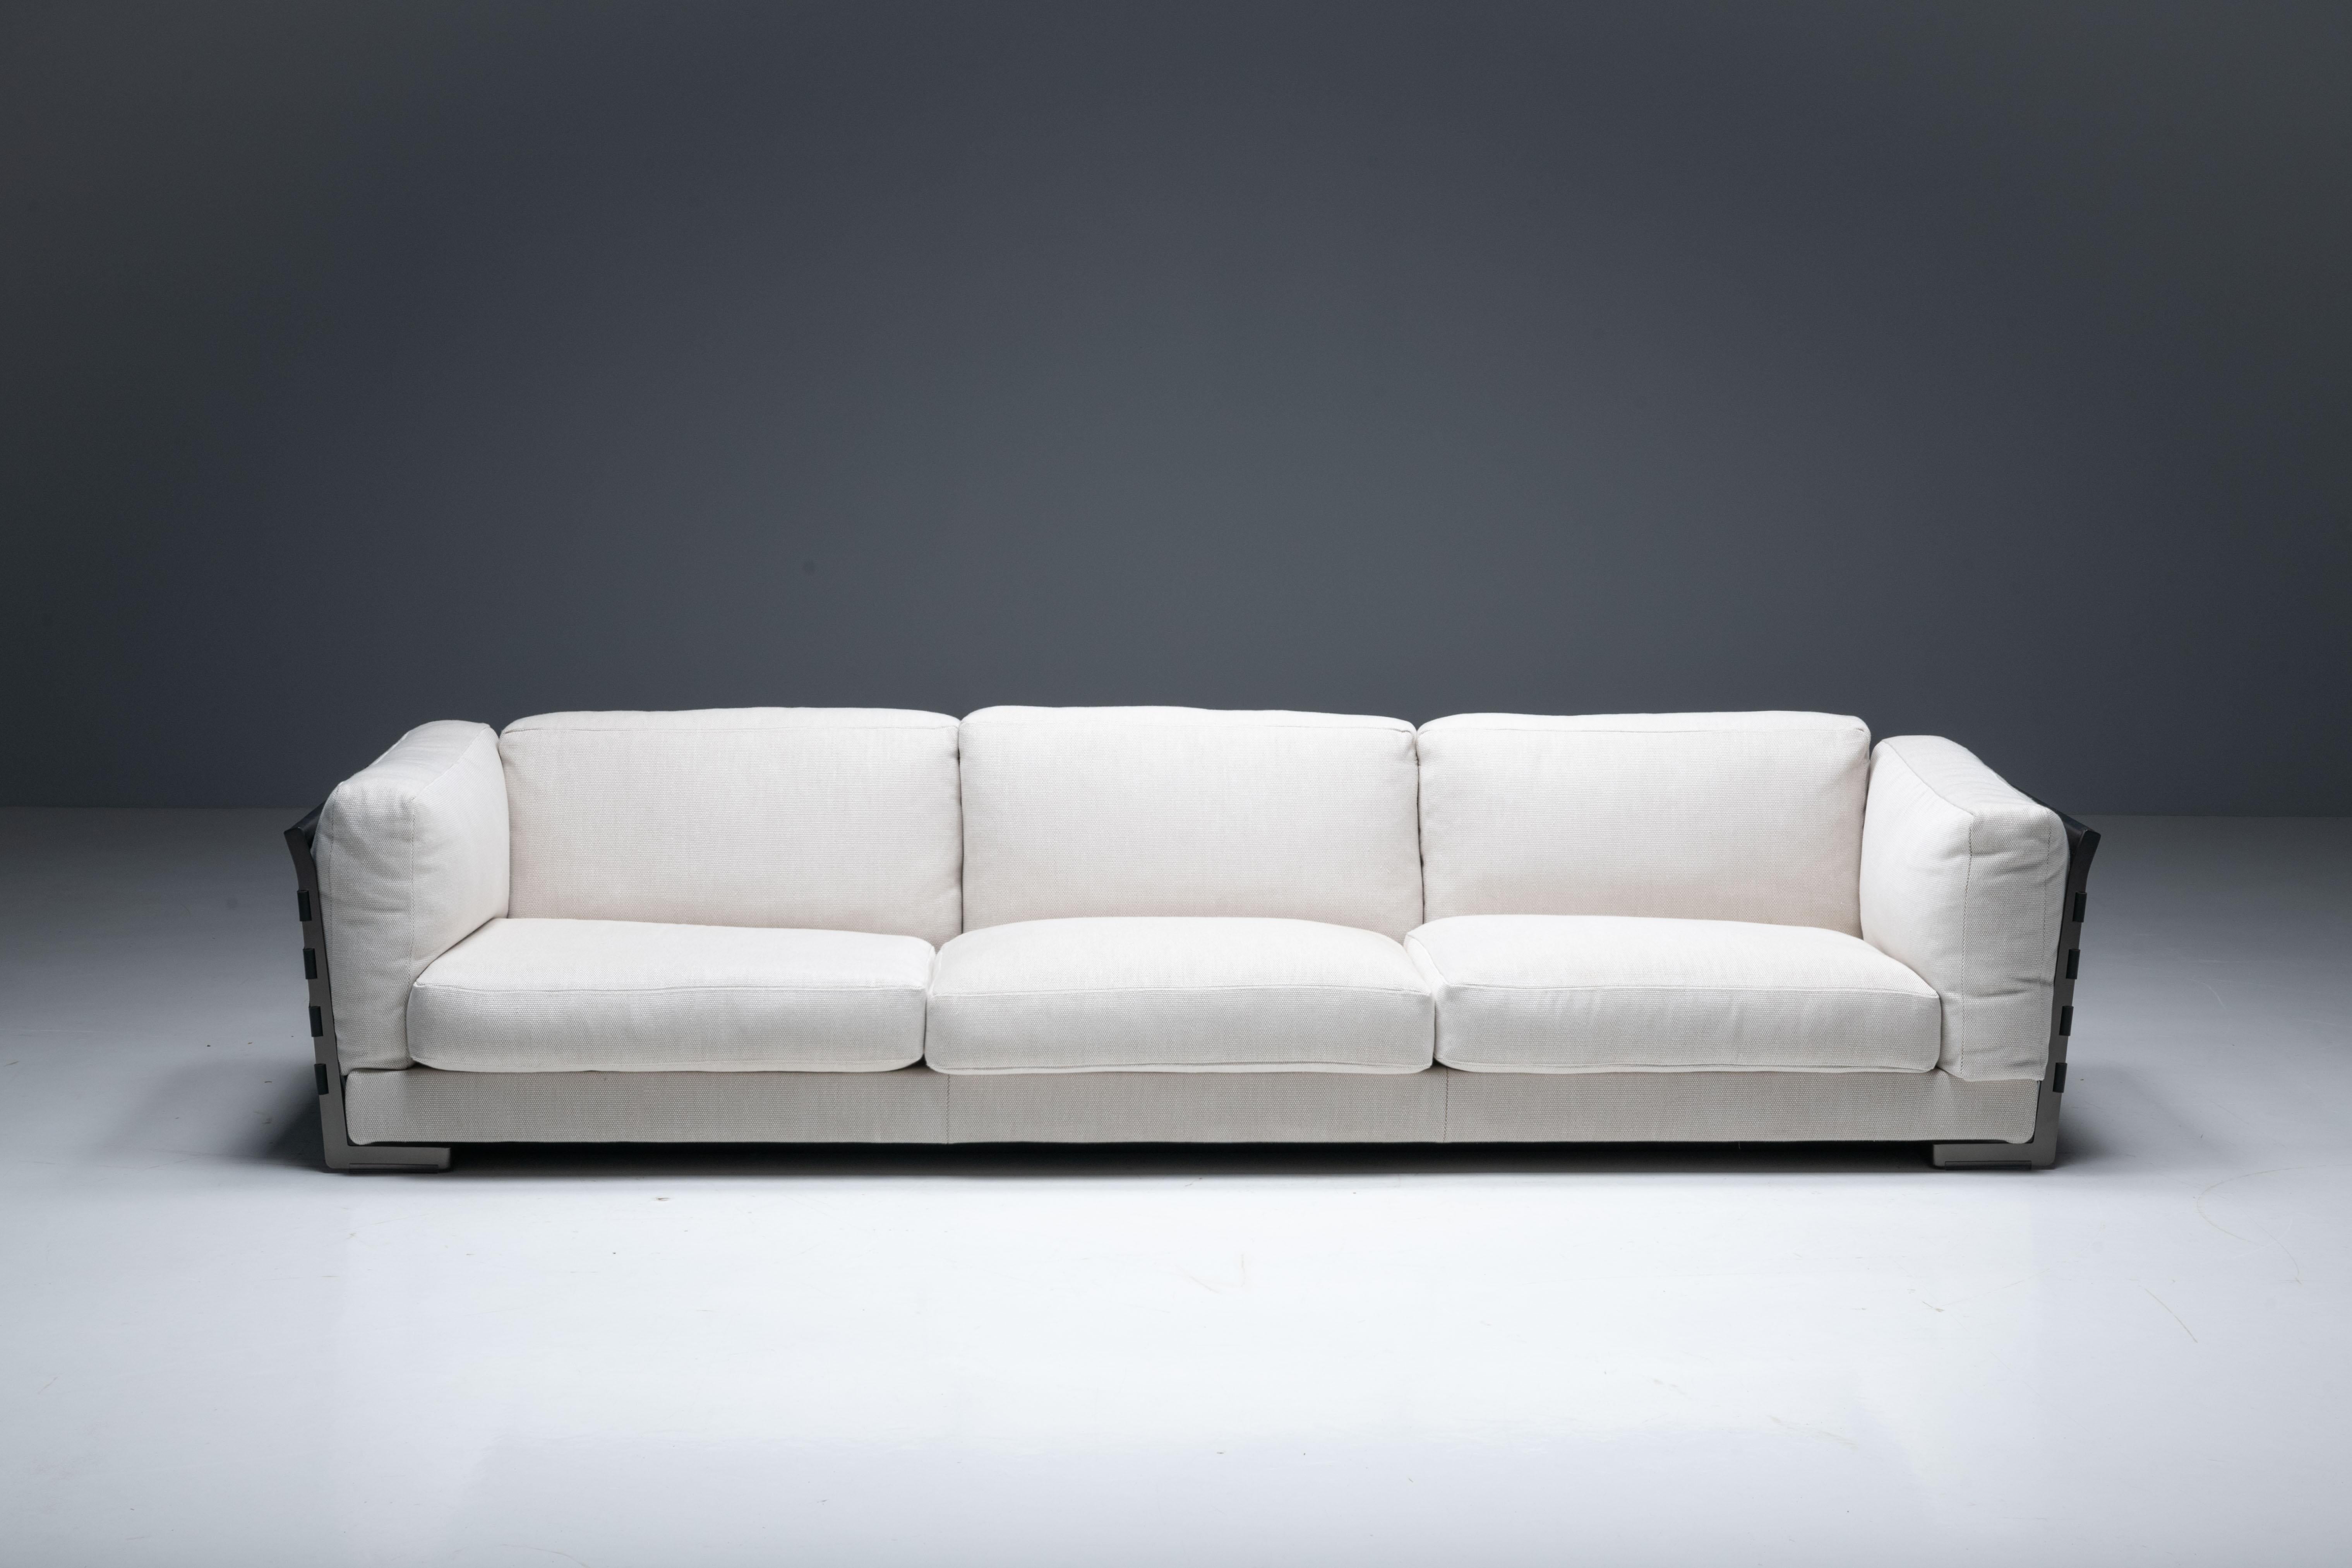 Das dreisitzige Sofa Cestone wurde 2008 von Antonio Citterio für Flexform entworfen und verkörpert authentische italienische Handwerkskunst. Dieses Ausstellungsmodell, das so konzipiert ist, dass es die Aufmerksamkeit auf sich zieht und im